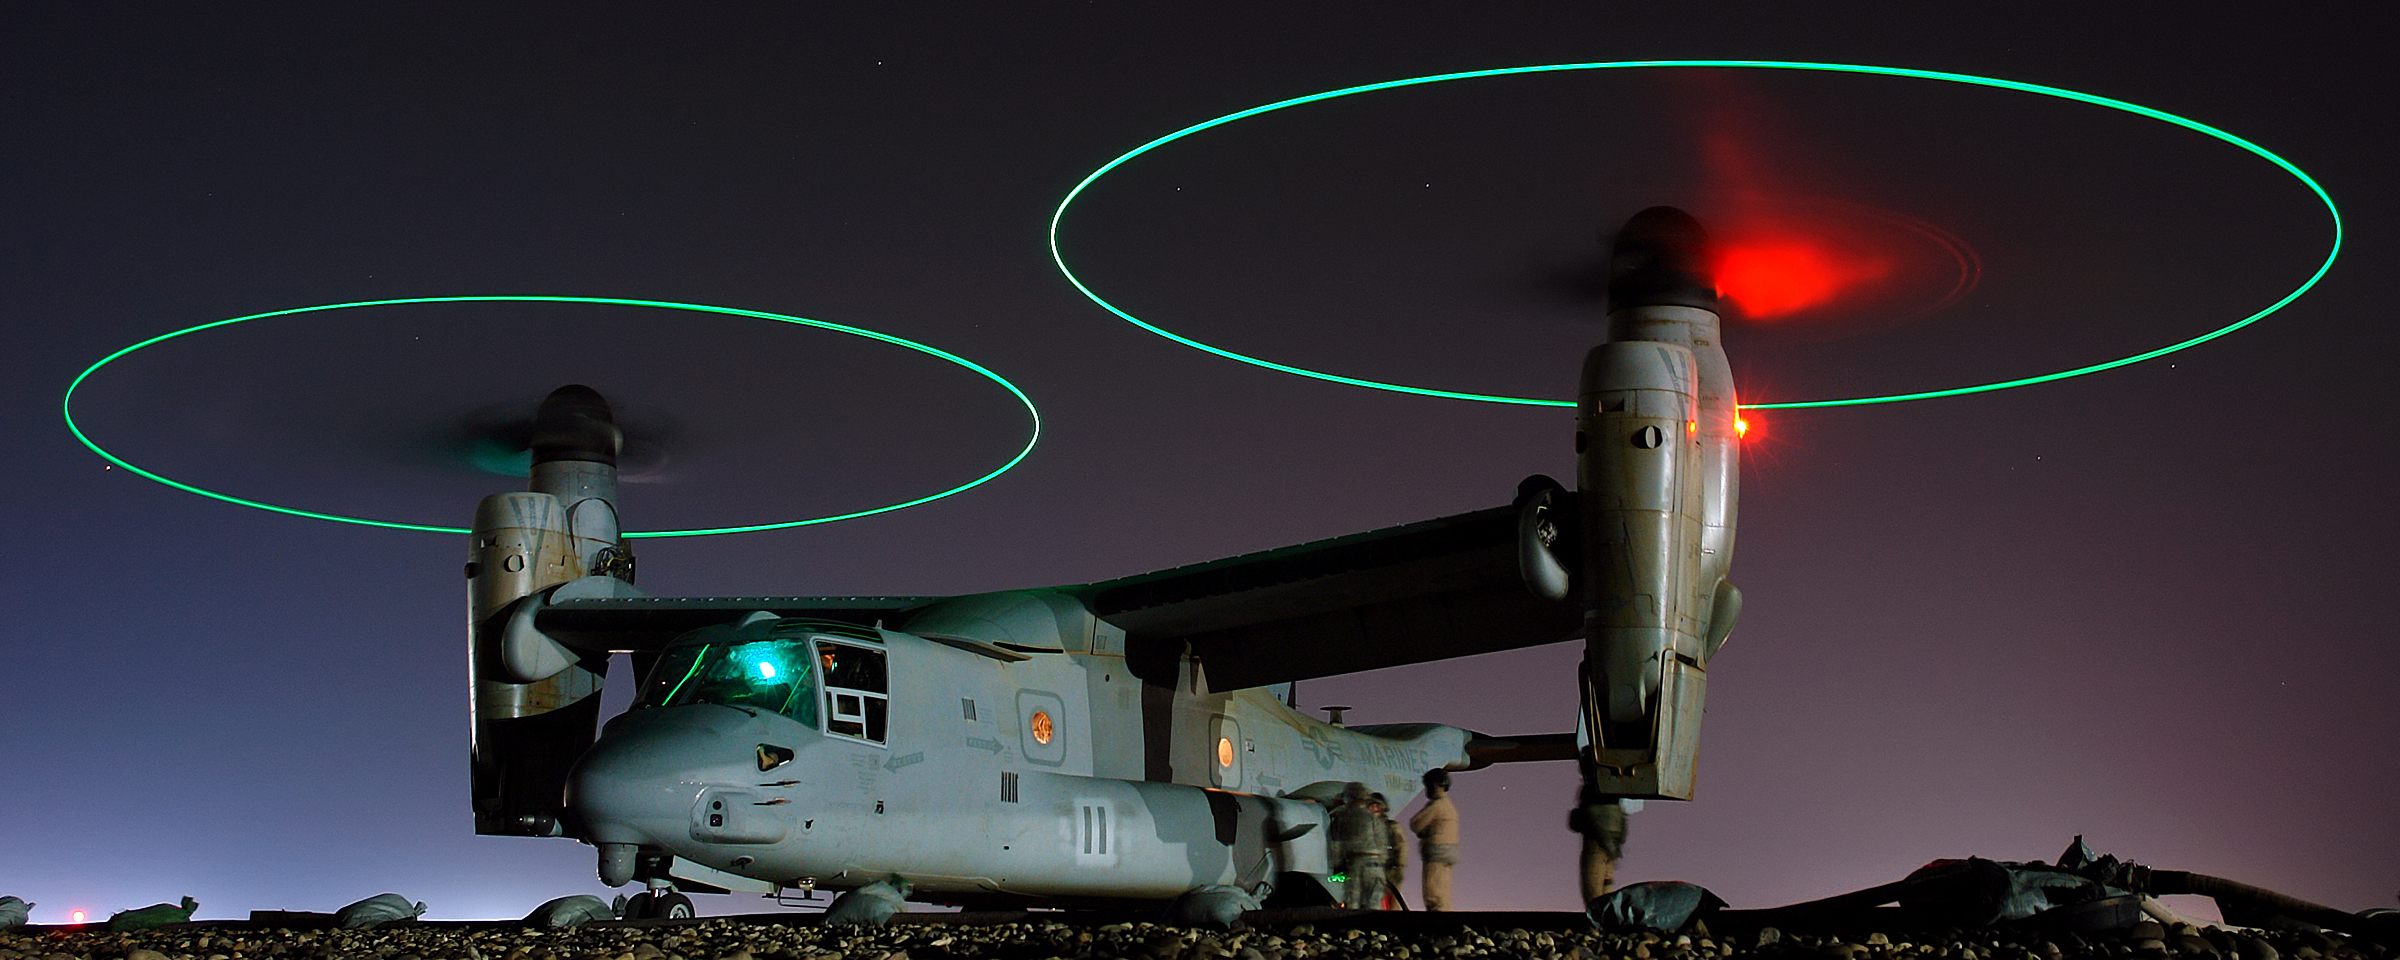 V-22 Osprey with blade tip lights